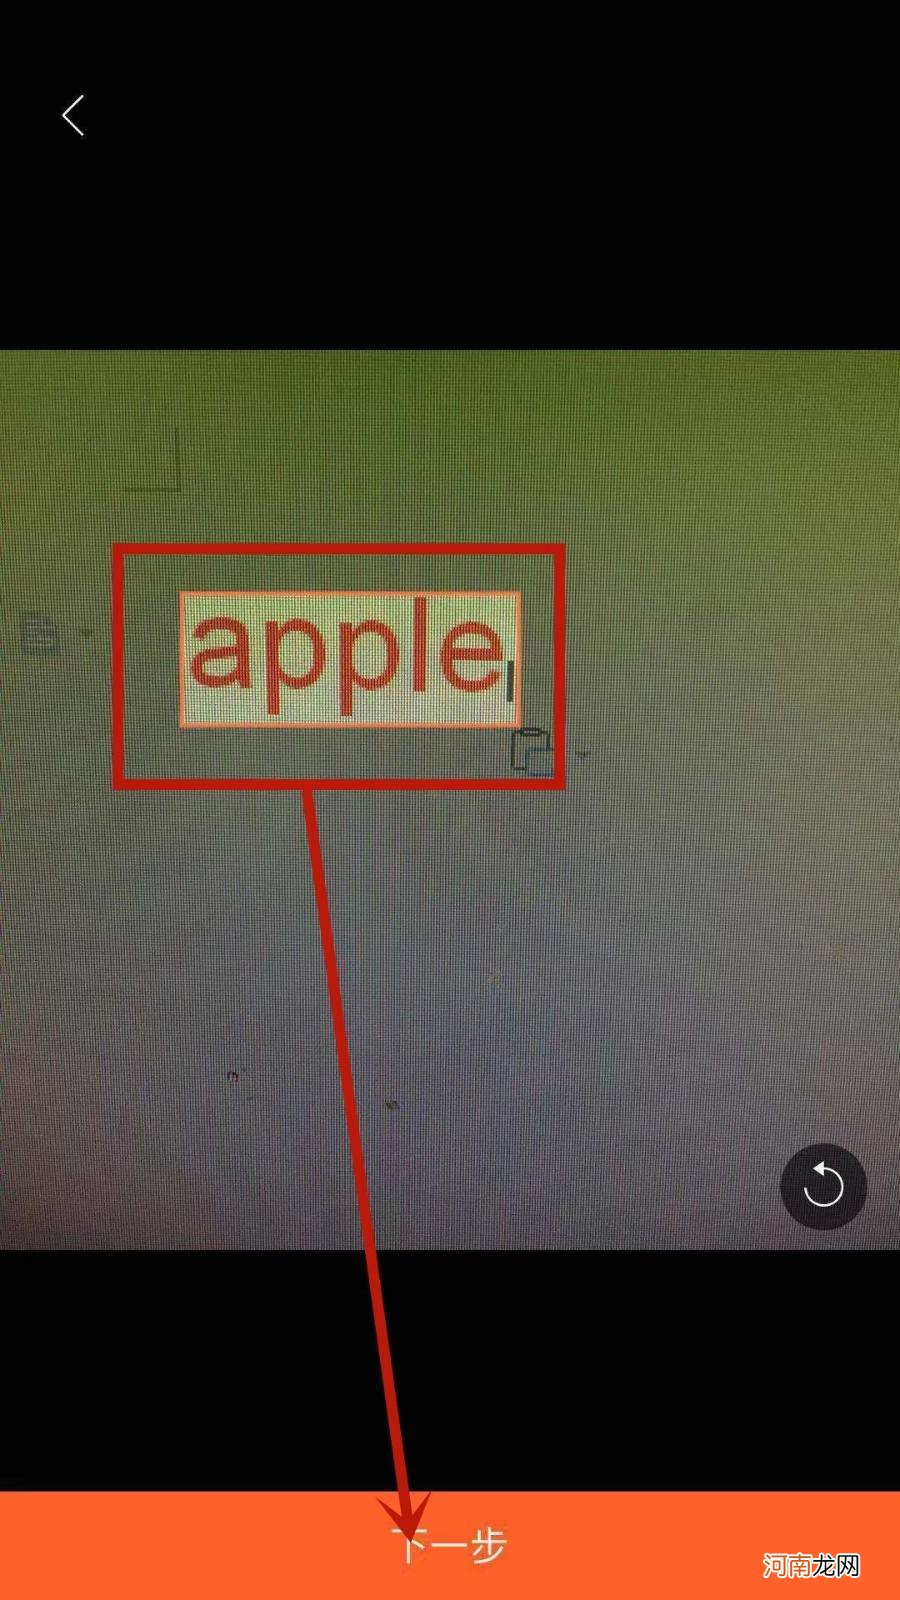 苹果手机怎么翻译图片中的文字优质